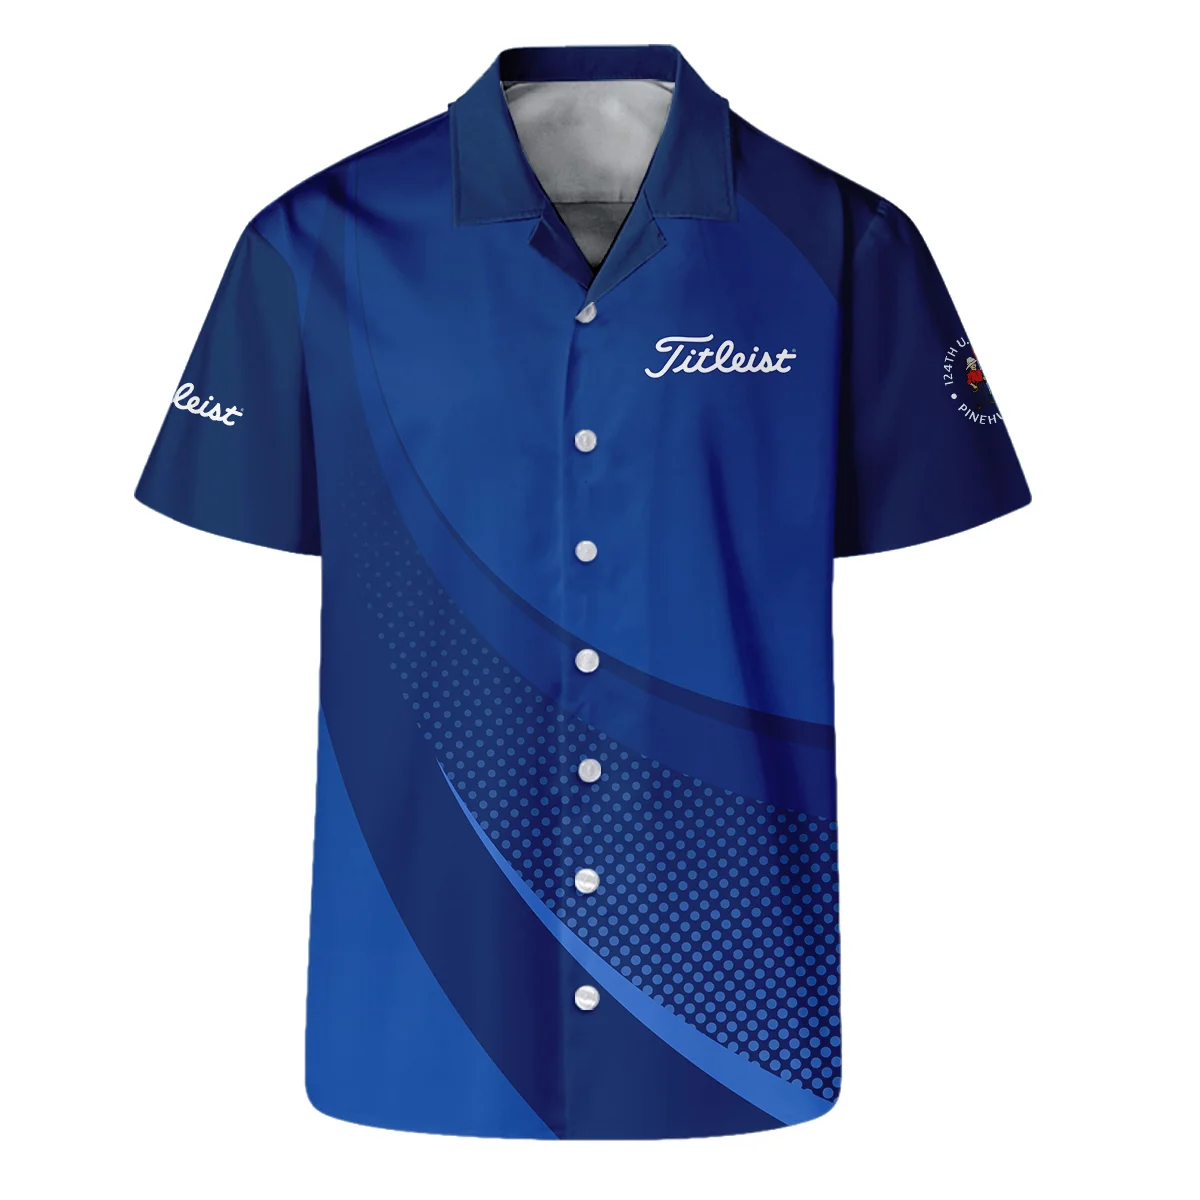 Titleist 124th U.S. Open Pinehurst Golf Sport Zipper Polo Shirt Dark Blue Gradient Halftone Pattern All Over Print Zipper Polo Shirt For Men